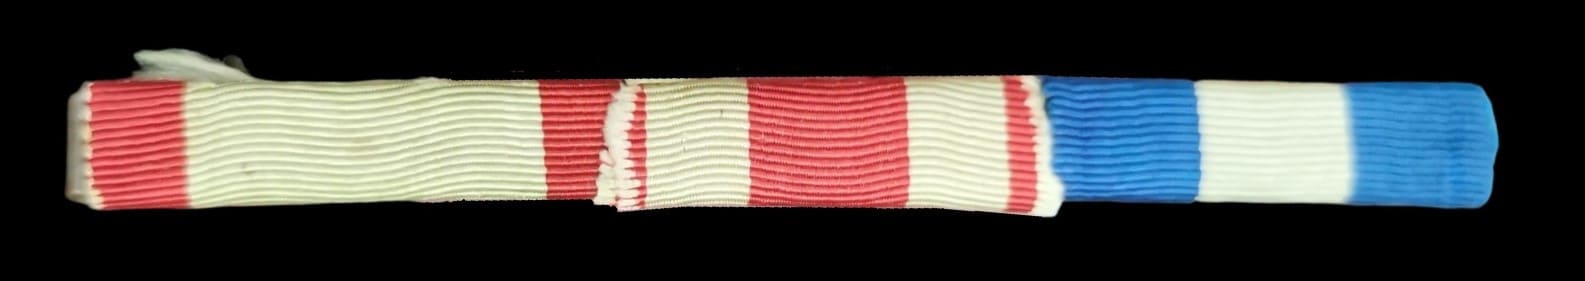 Japanese Ribbon Medal Bar.jpg